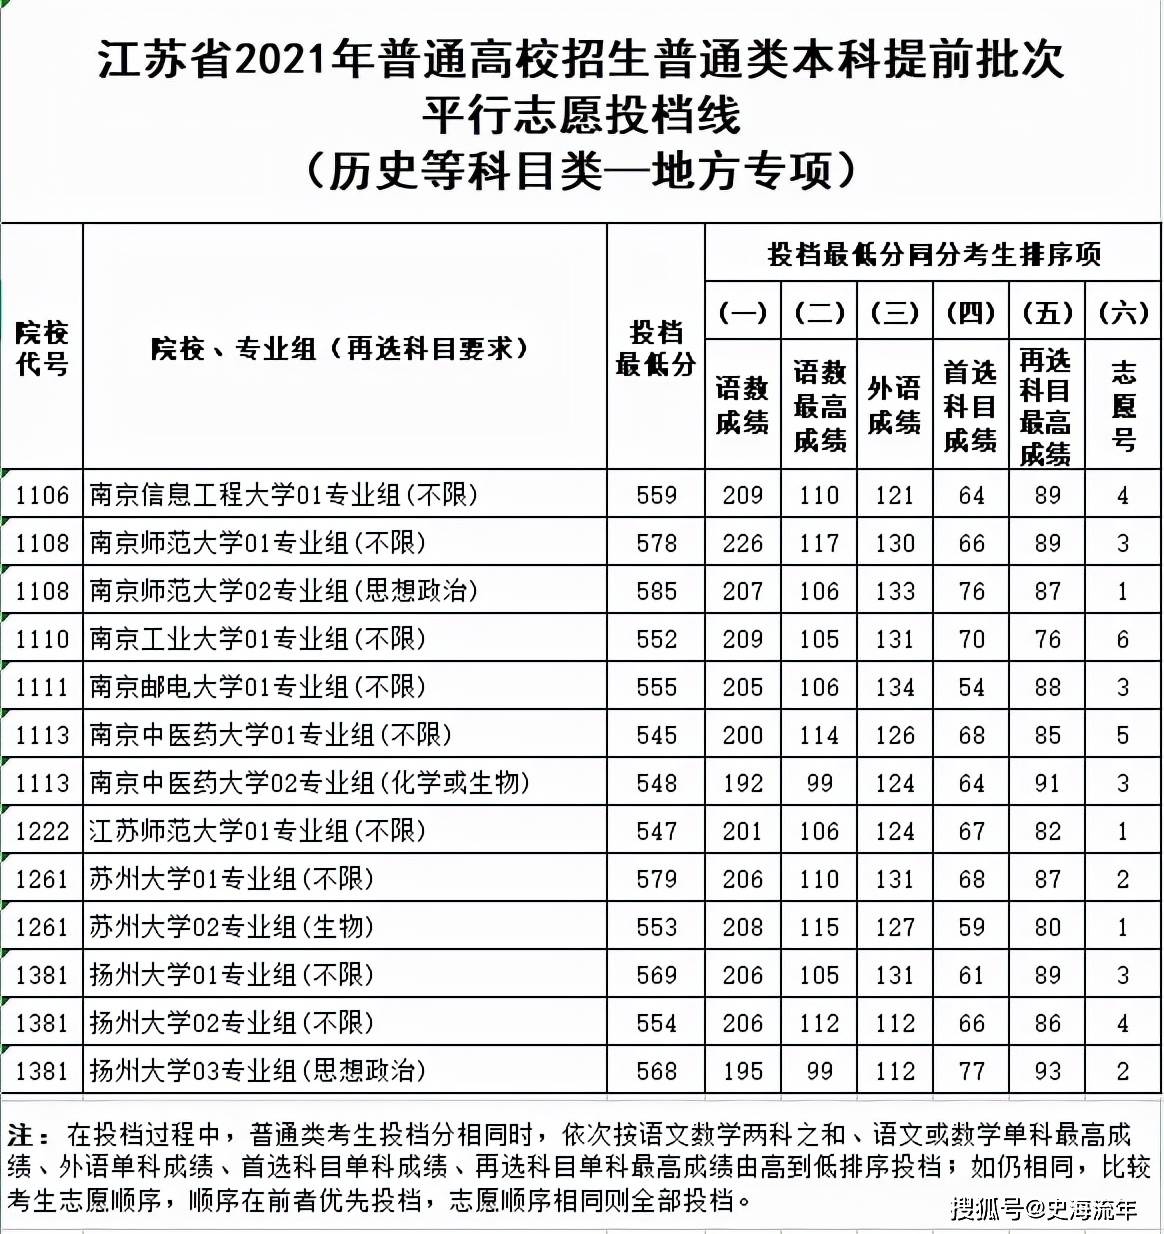 2011年,409分,本一线名次全省排176名,所以2011年江苏高考本一线名次